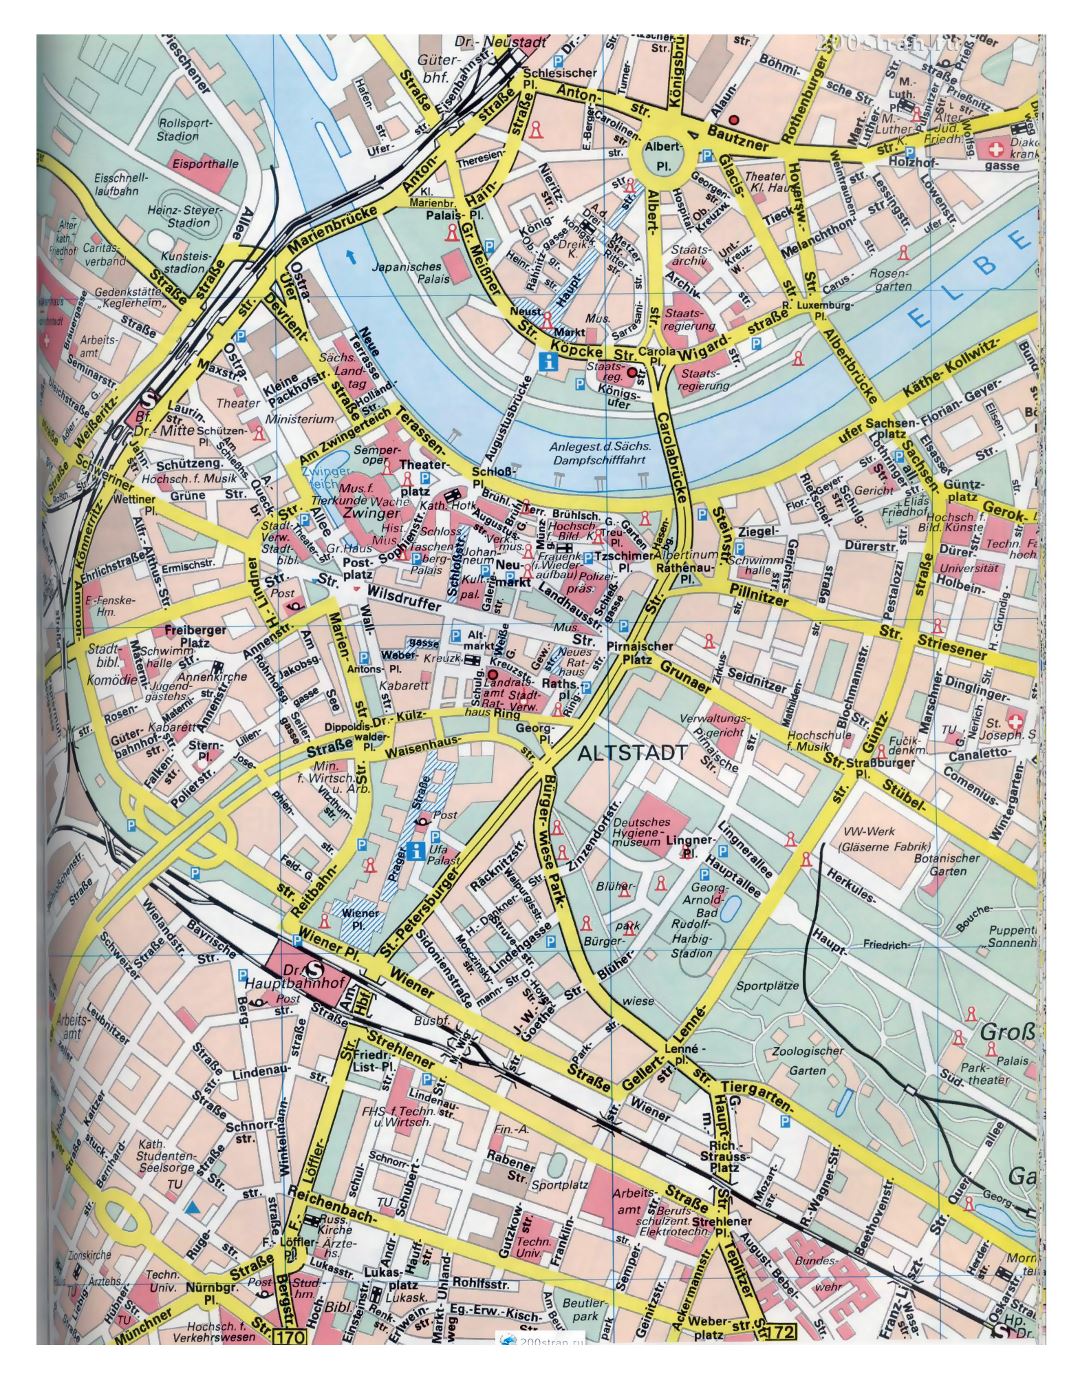 Большая детальная карта улиц центральной части города Дрезден